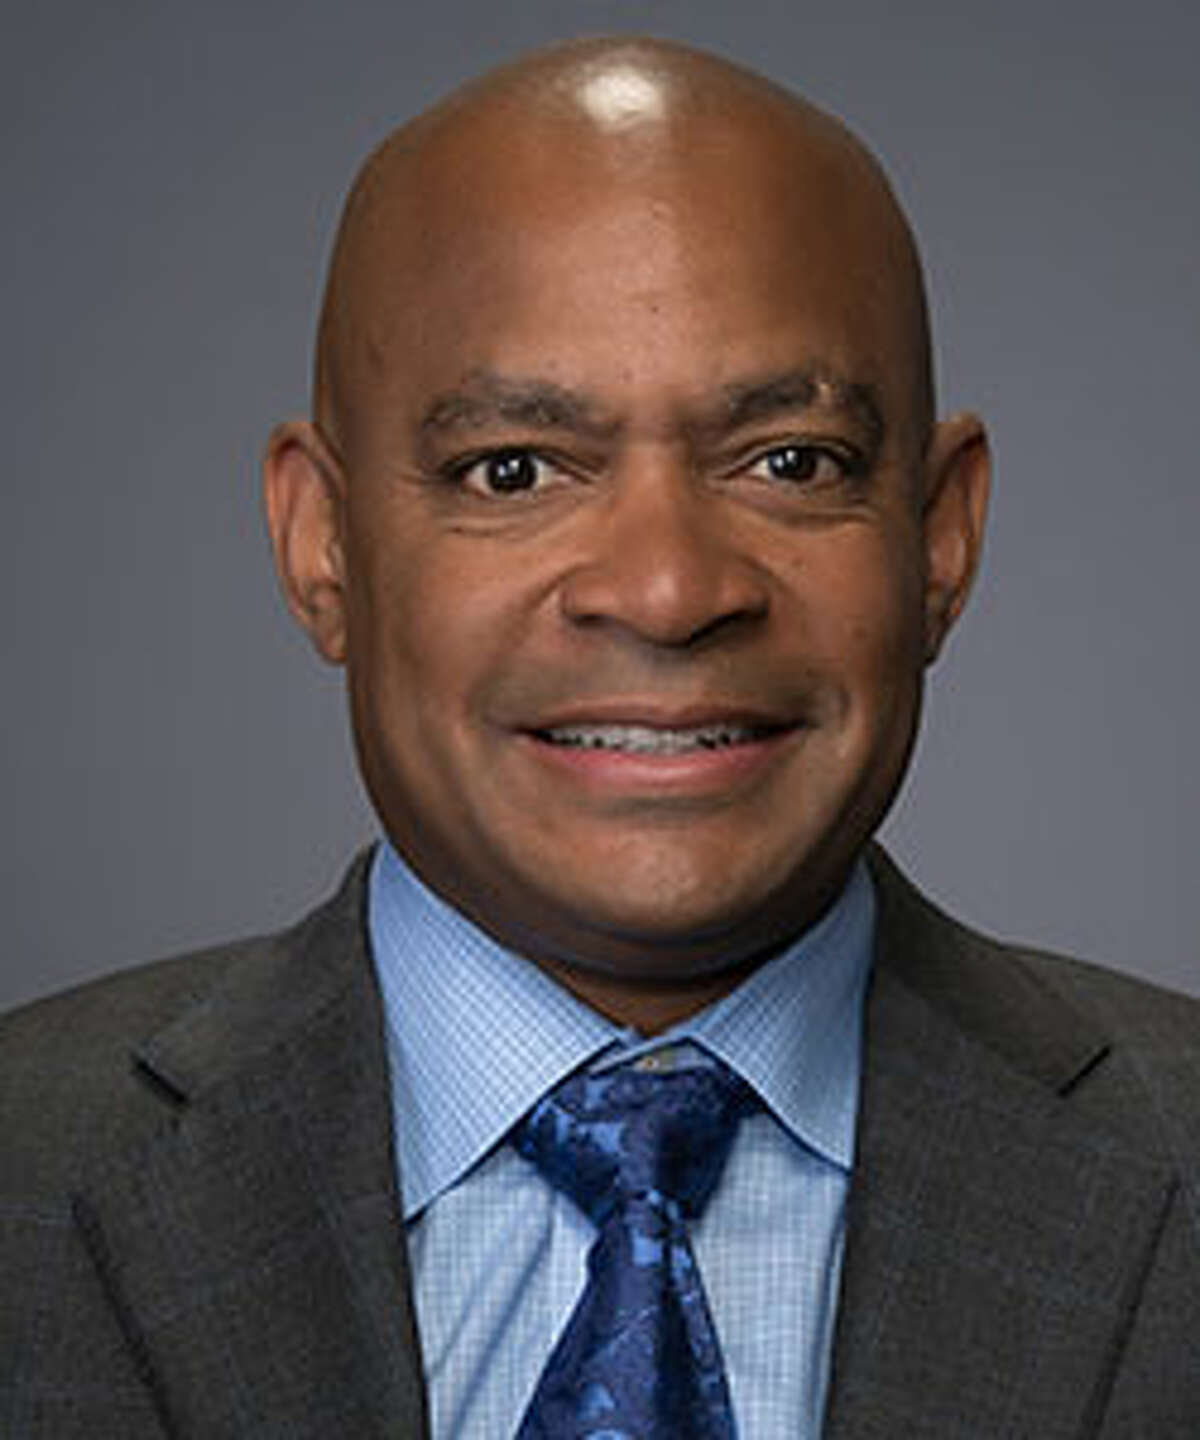 Jimmy Raye III, Texans executive